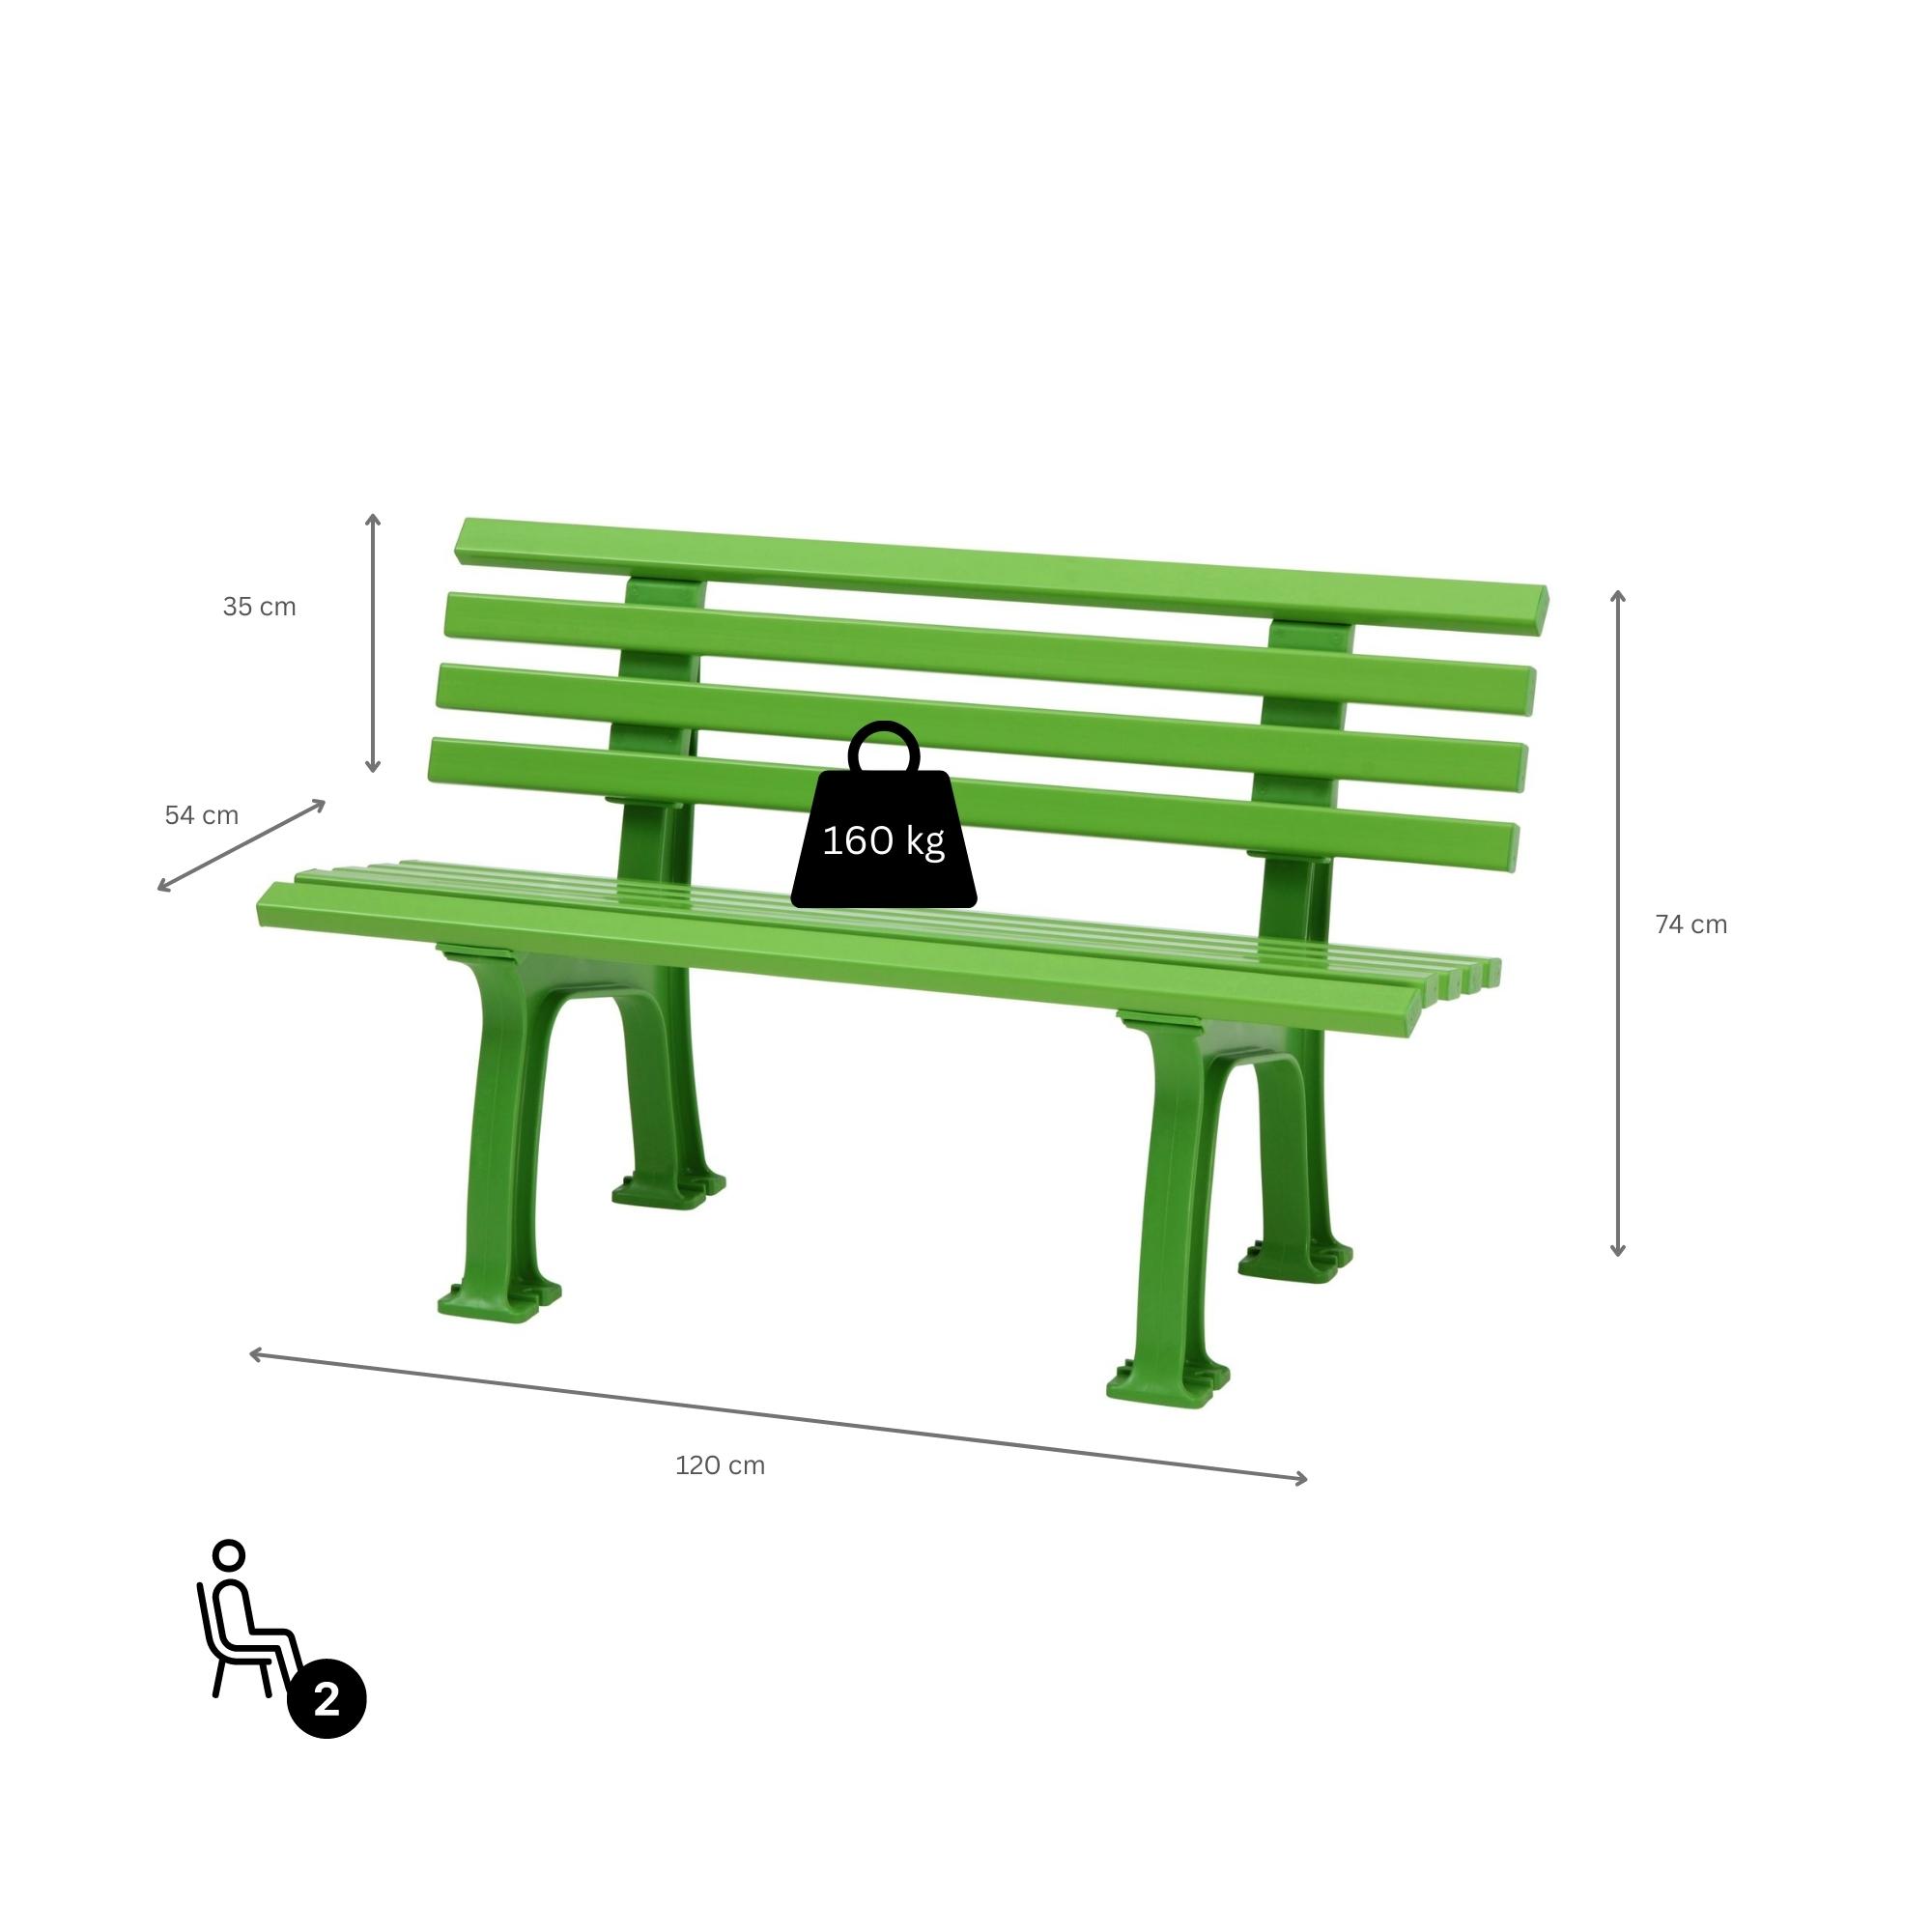 Gartenbank Antigua | 2-Sitzer | Apfelgrün | HxBxT 74x120x54cm | Witterungs- & UV-beständiger Kunststoff | Parkbank Sitzbank Außenbereich Garten Balkon Terrasse